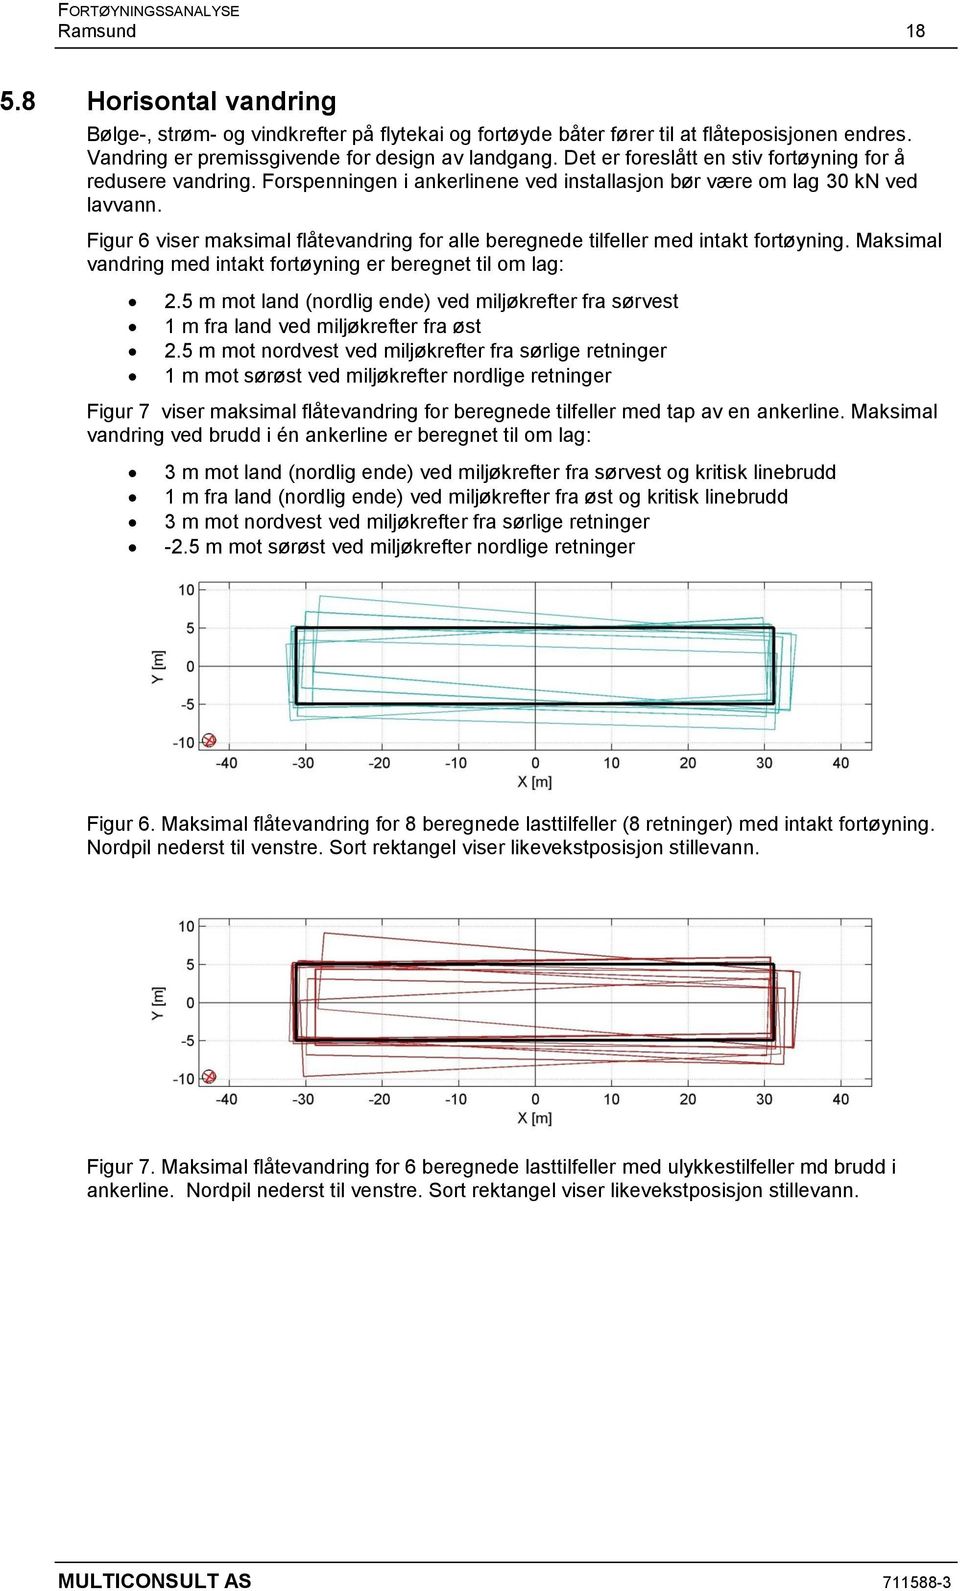 Figur 6 viser maksimal flåtevandring for alle beregnede tilfeller med intakt fortøyning. Maksimal vandring med intakt fortøyning er beregnet til om lag: 2.